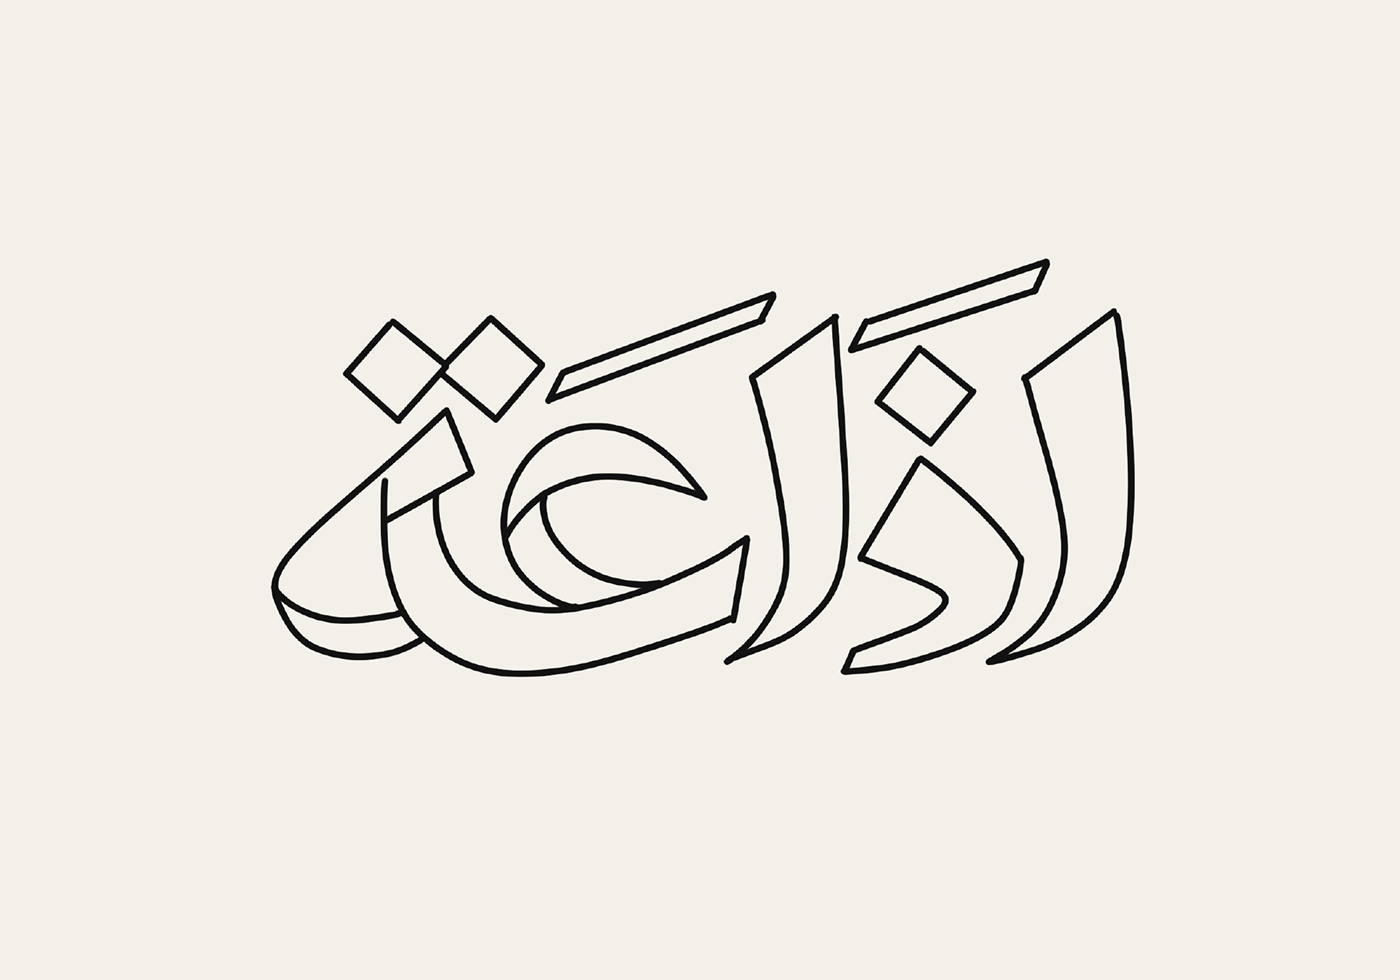 arabic type arabic typography font hebrayer type experiments typo typography design typography layout تايبوجرافي